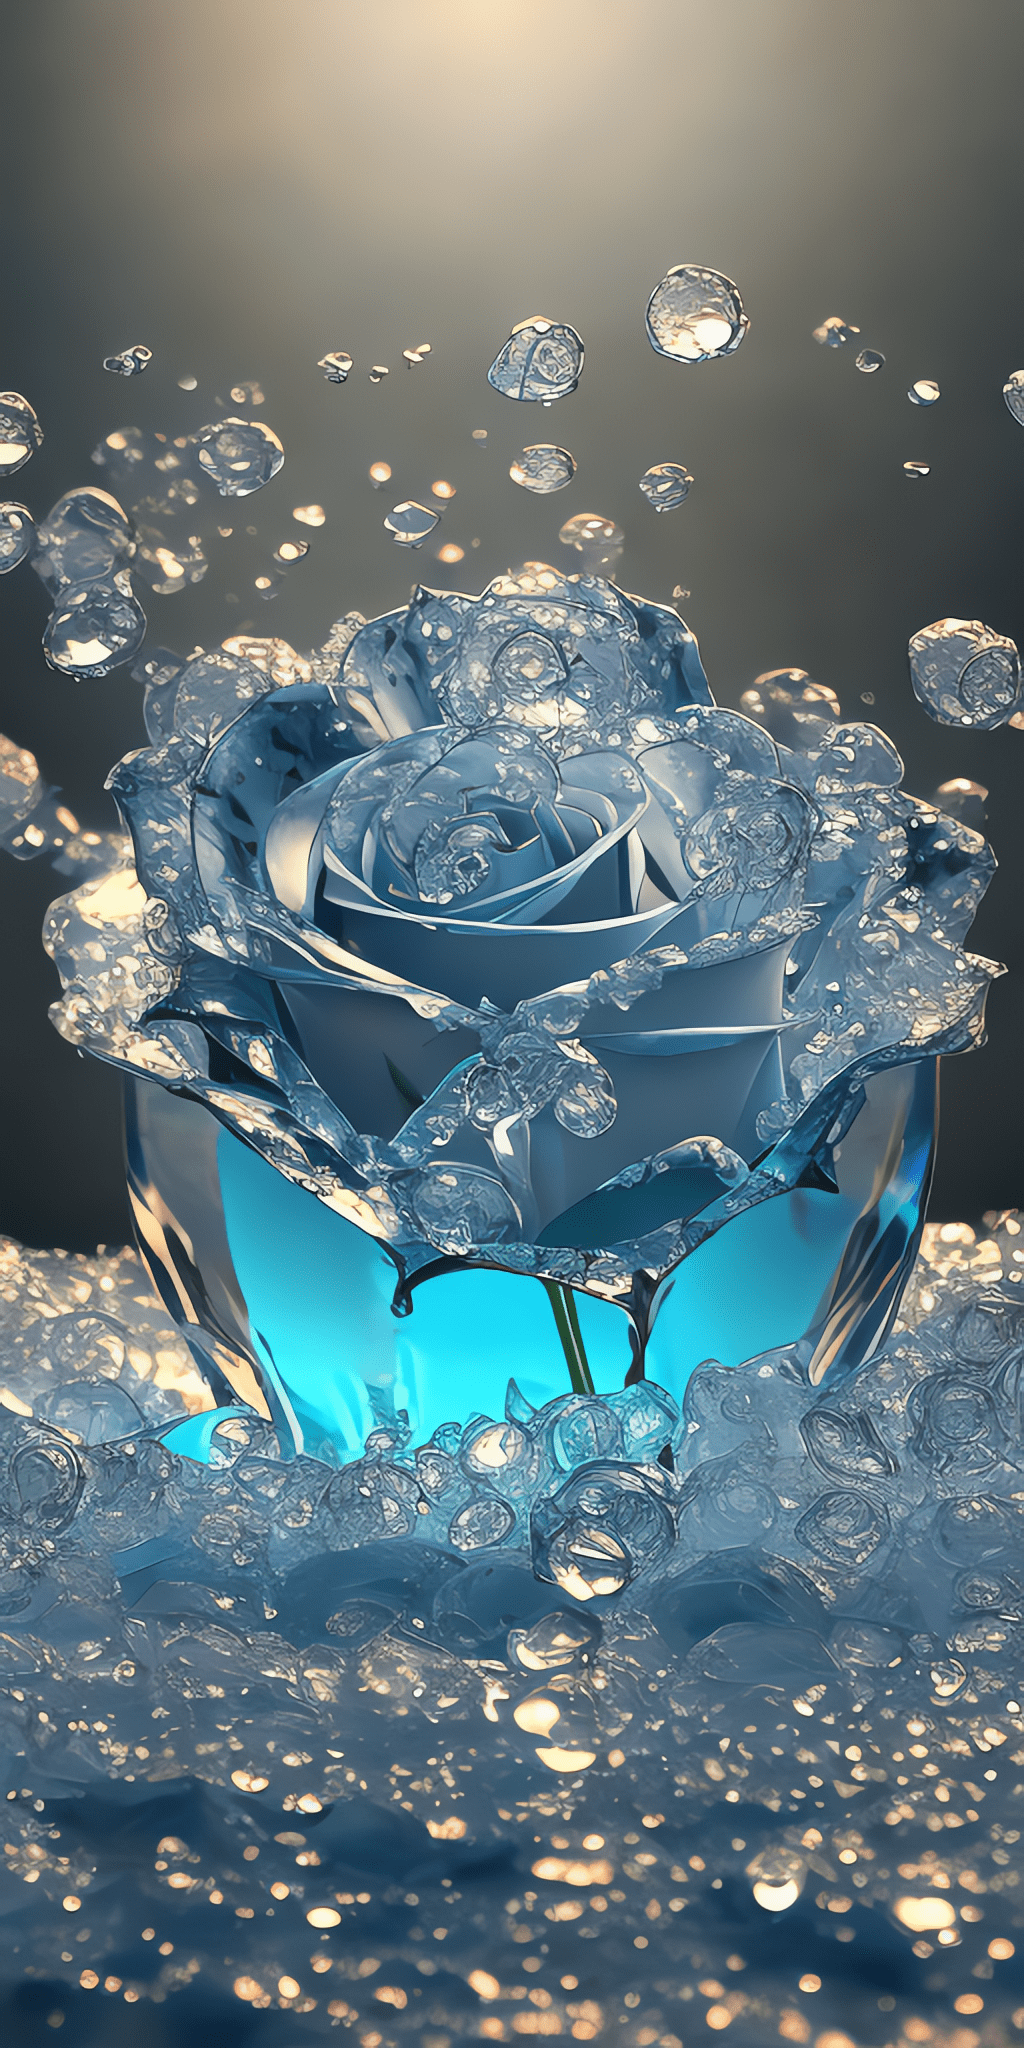 手机壁纸,碎冰蓝色的玫瑰:清晨中的生命之舞